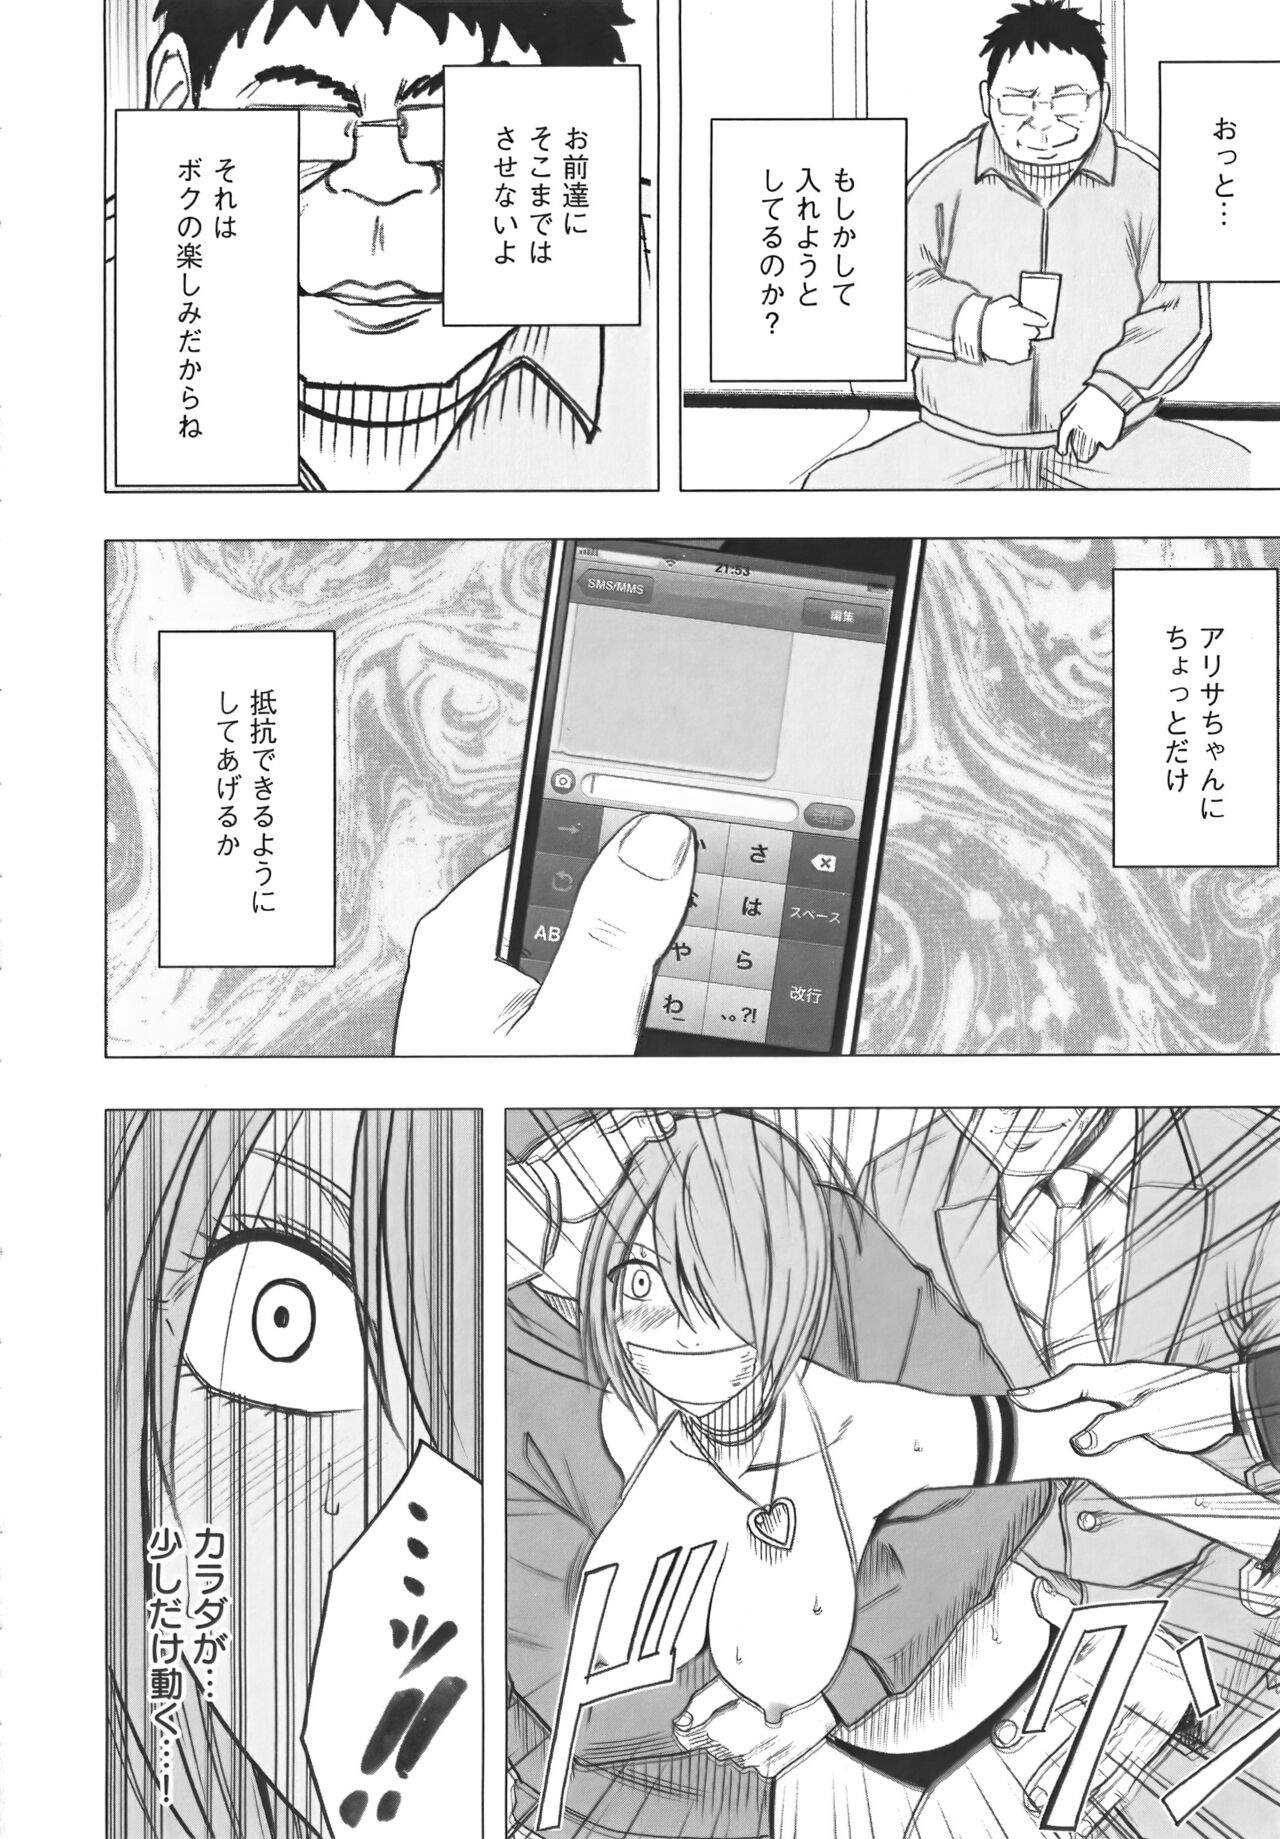 [Crimson] Idol Kyousei Sousa Vol.1 Smartphone de Meireishita Koto ga Genjitsu ni [Complete Edition] 203